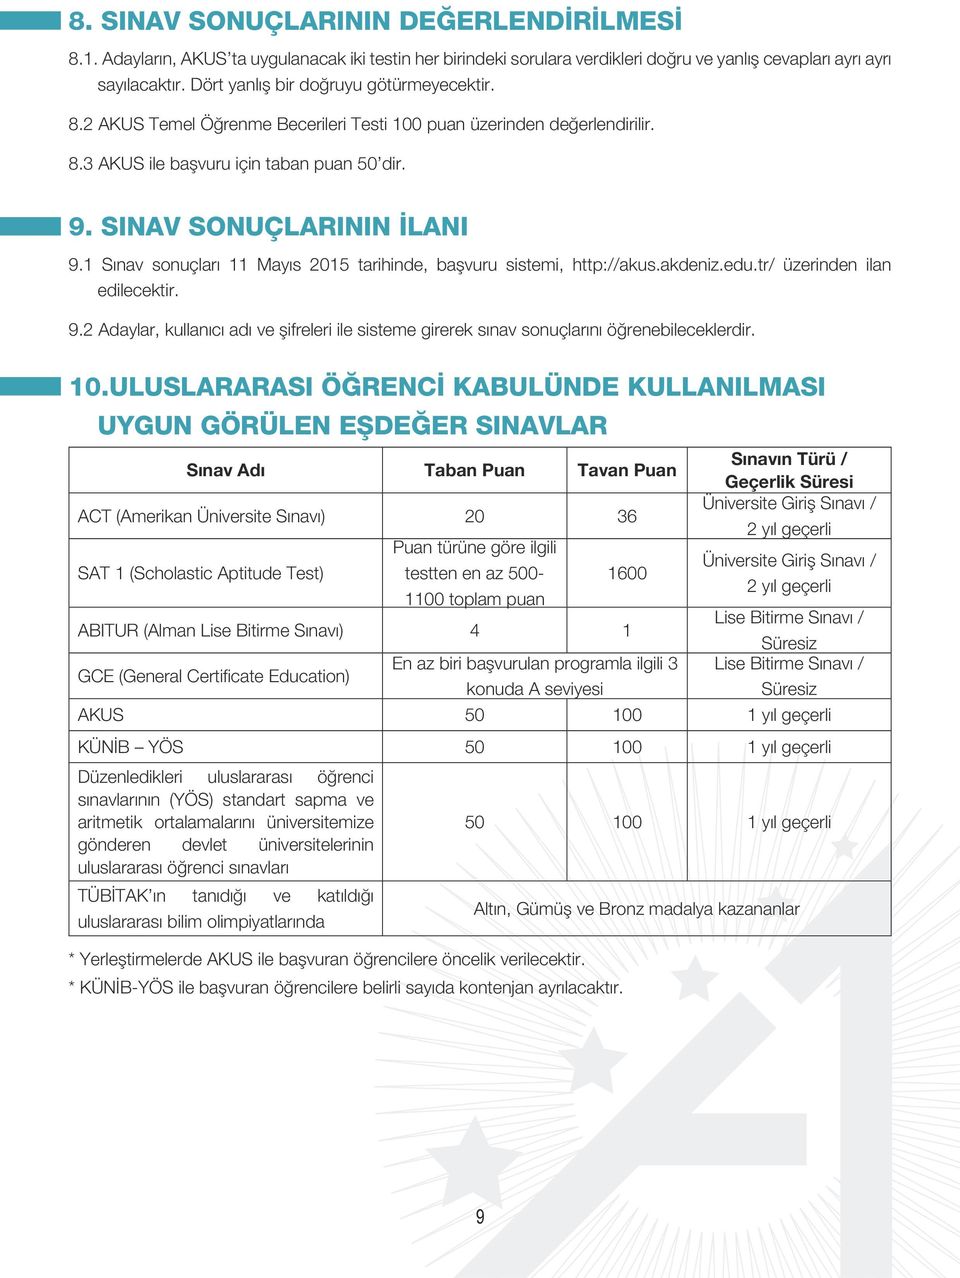 1 Sınav sonuçları 11 Mayıs 2015 tarihinde, başvuru sistemi, http://akus.akdeniz.edu.tr/ üzerinden ilan edilecektir. 9.